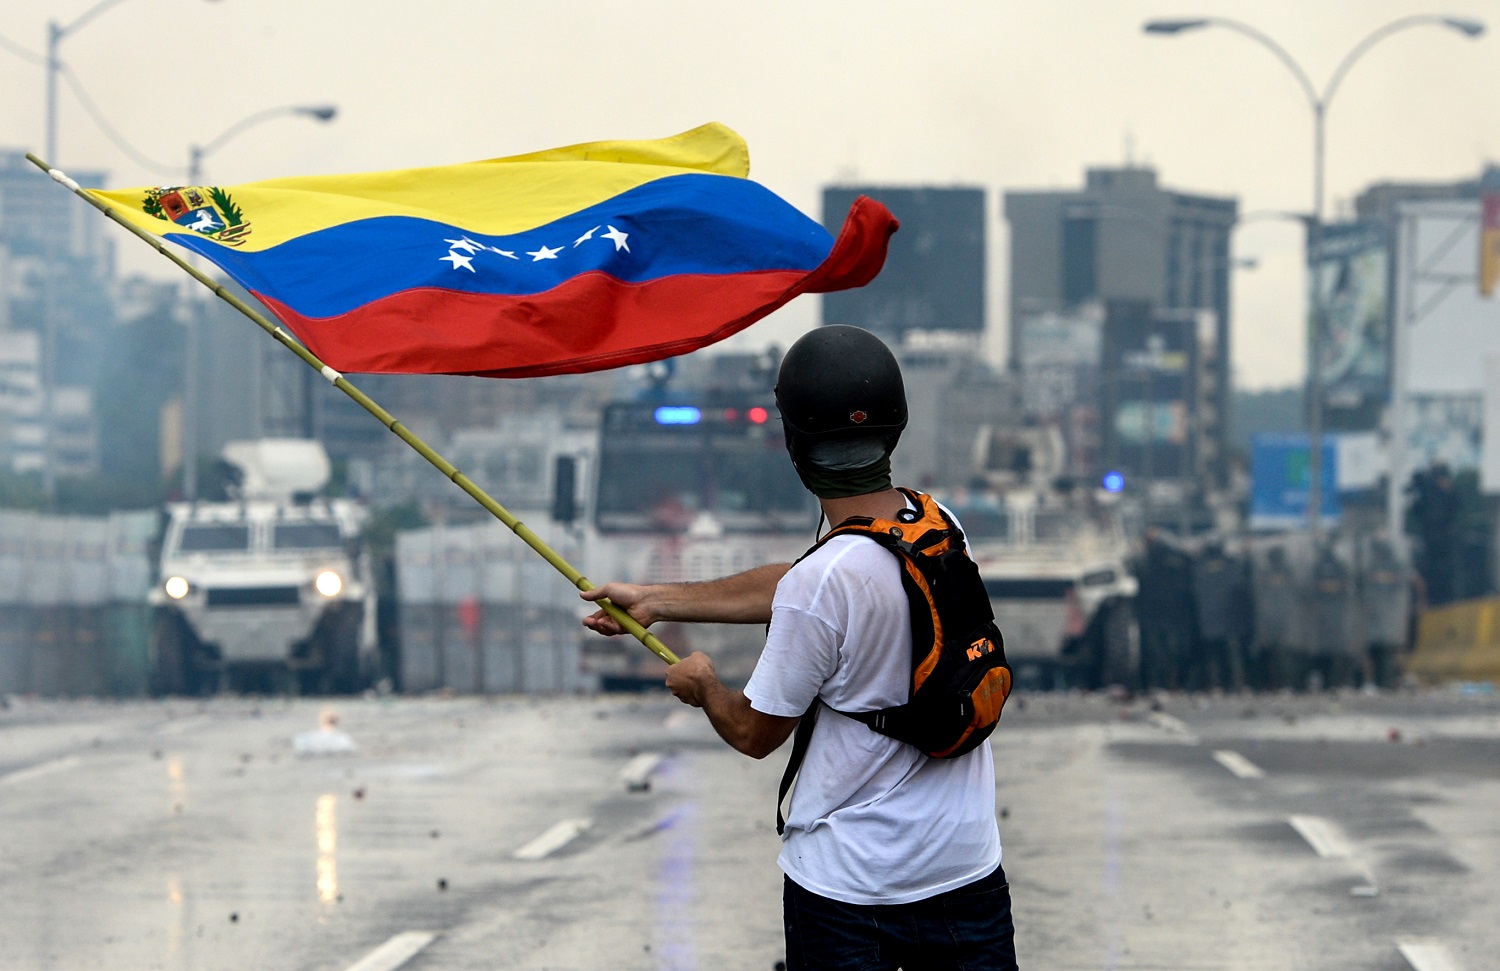 Crisis De Derechos Humanos En Venezuela